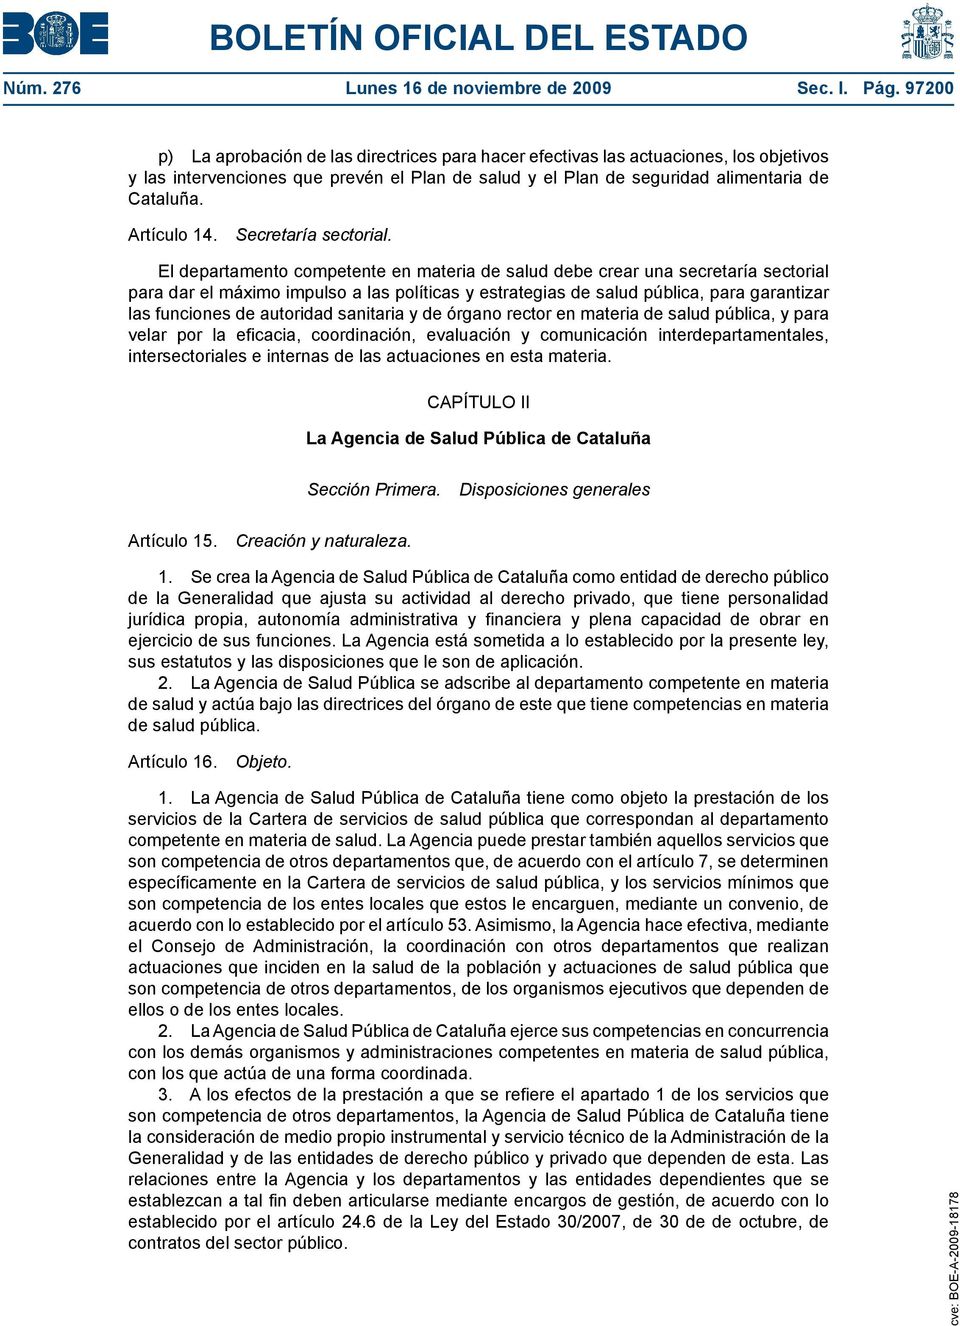 Artículo 14. Secretaría sectorial.